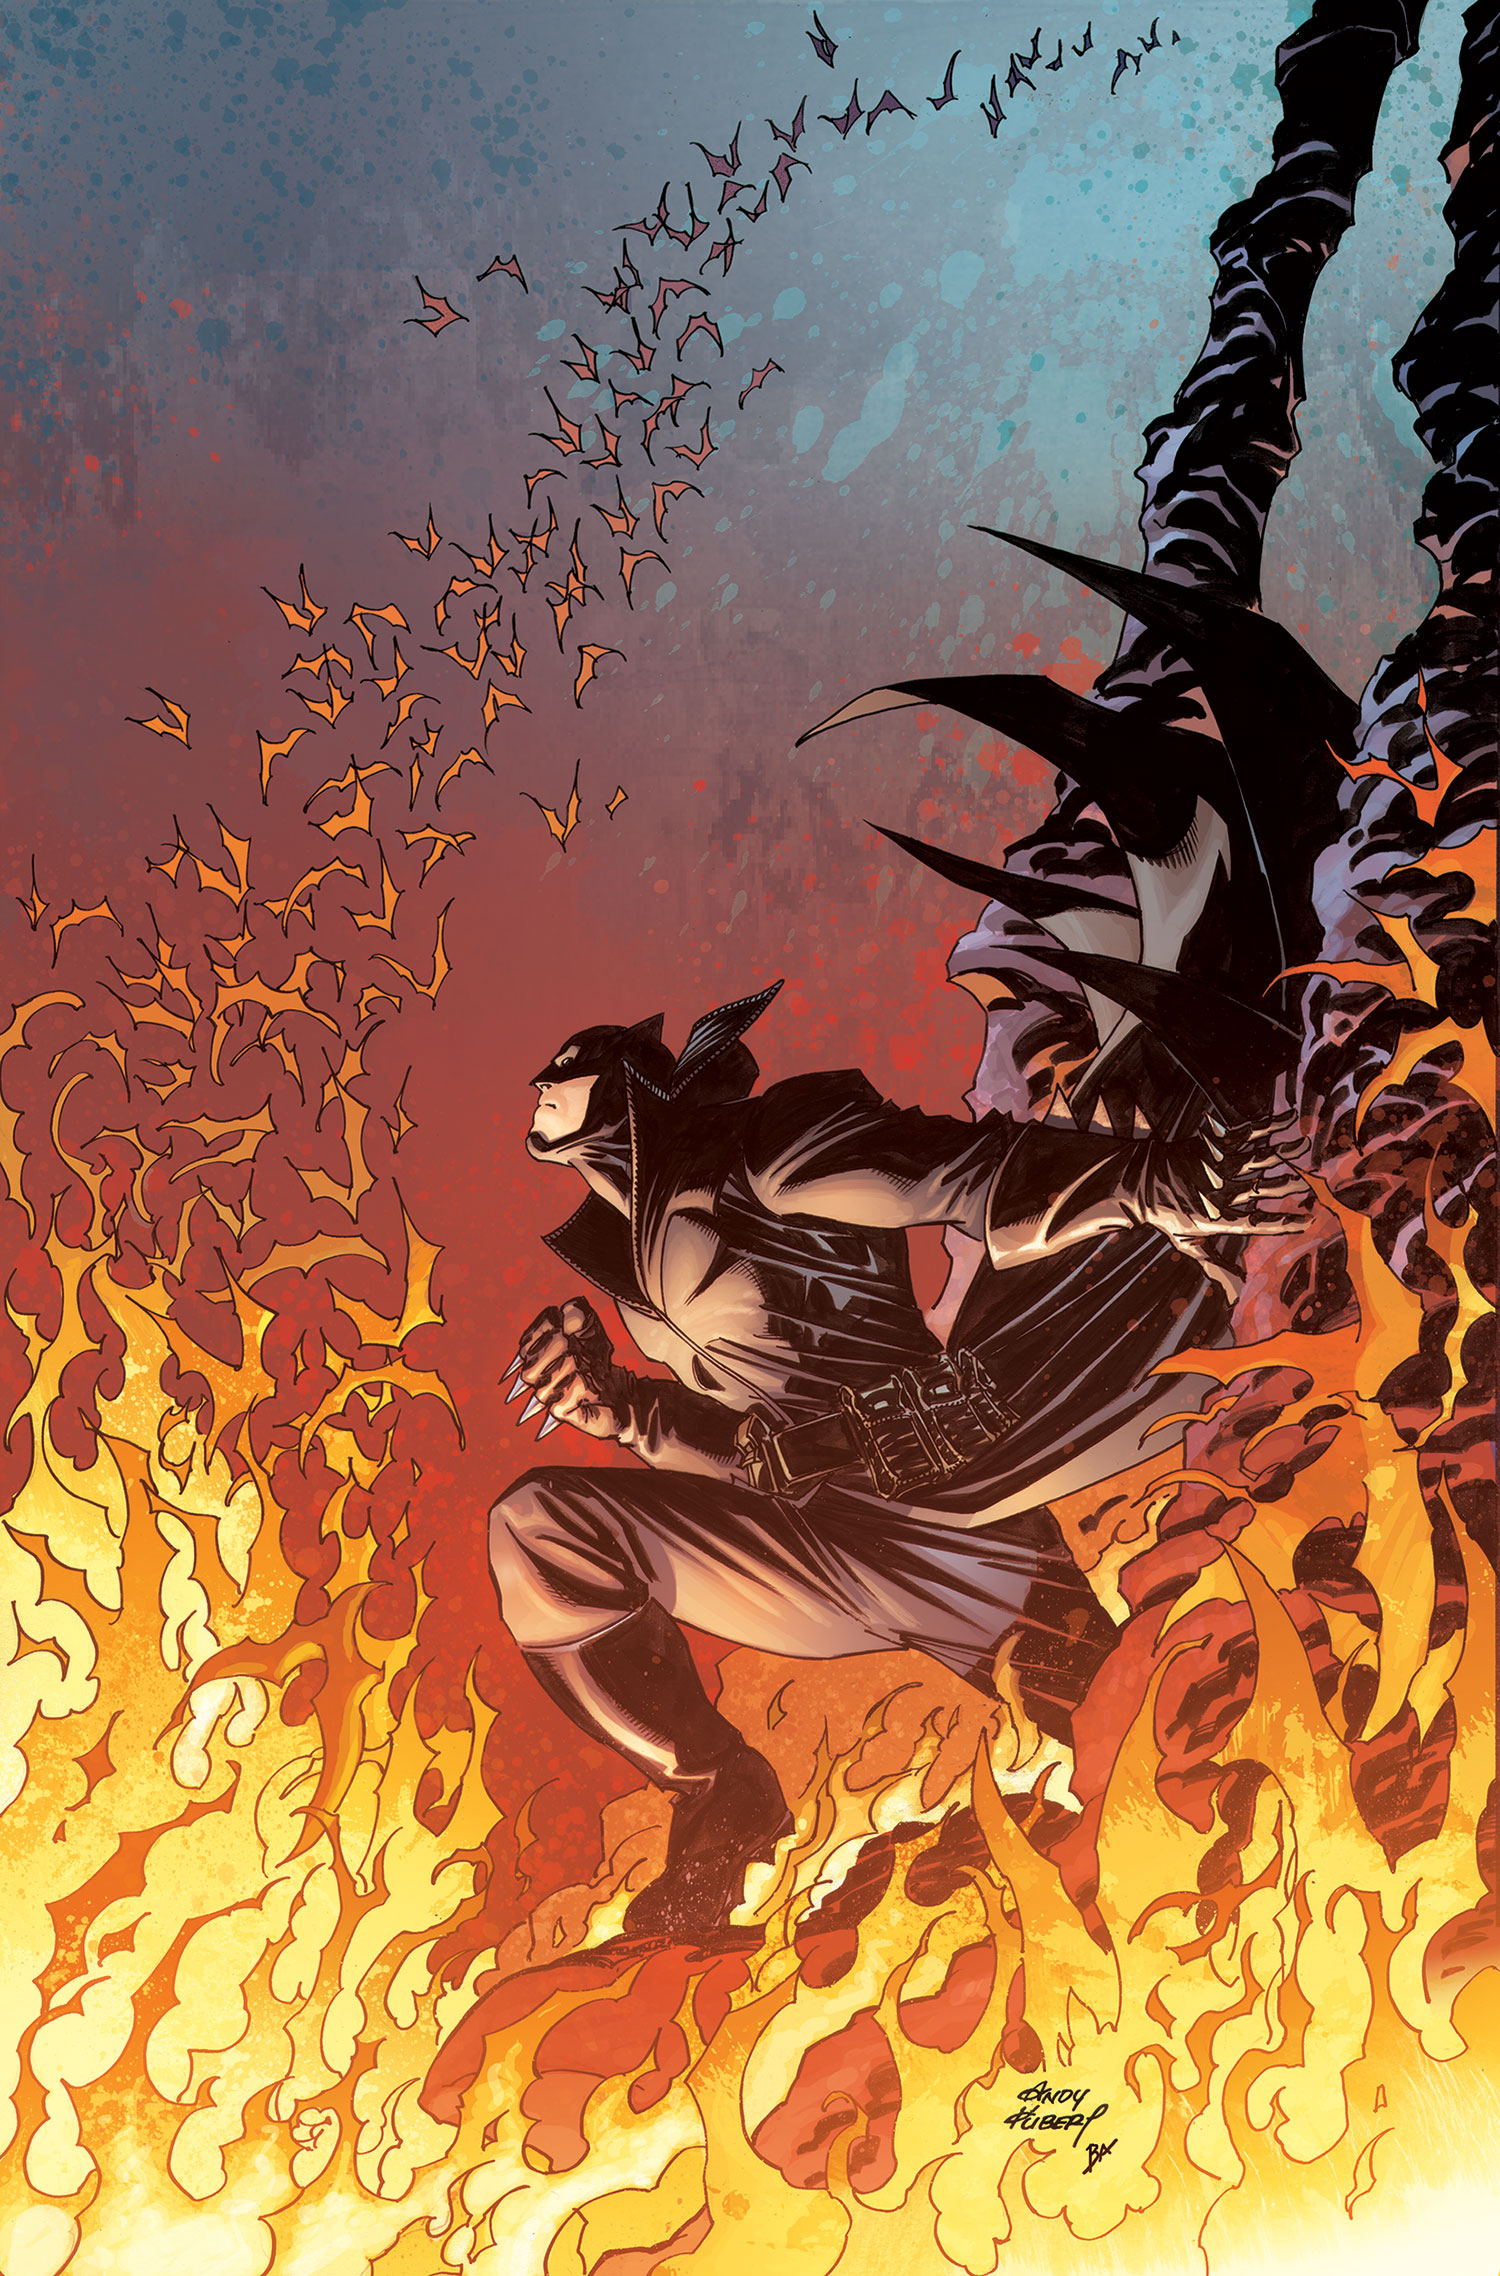 DAMIAN SON OF BATMAN #1-4 REGULAR COVER NEAR MINT 2014 ANDY KUBERT 